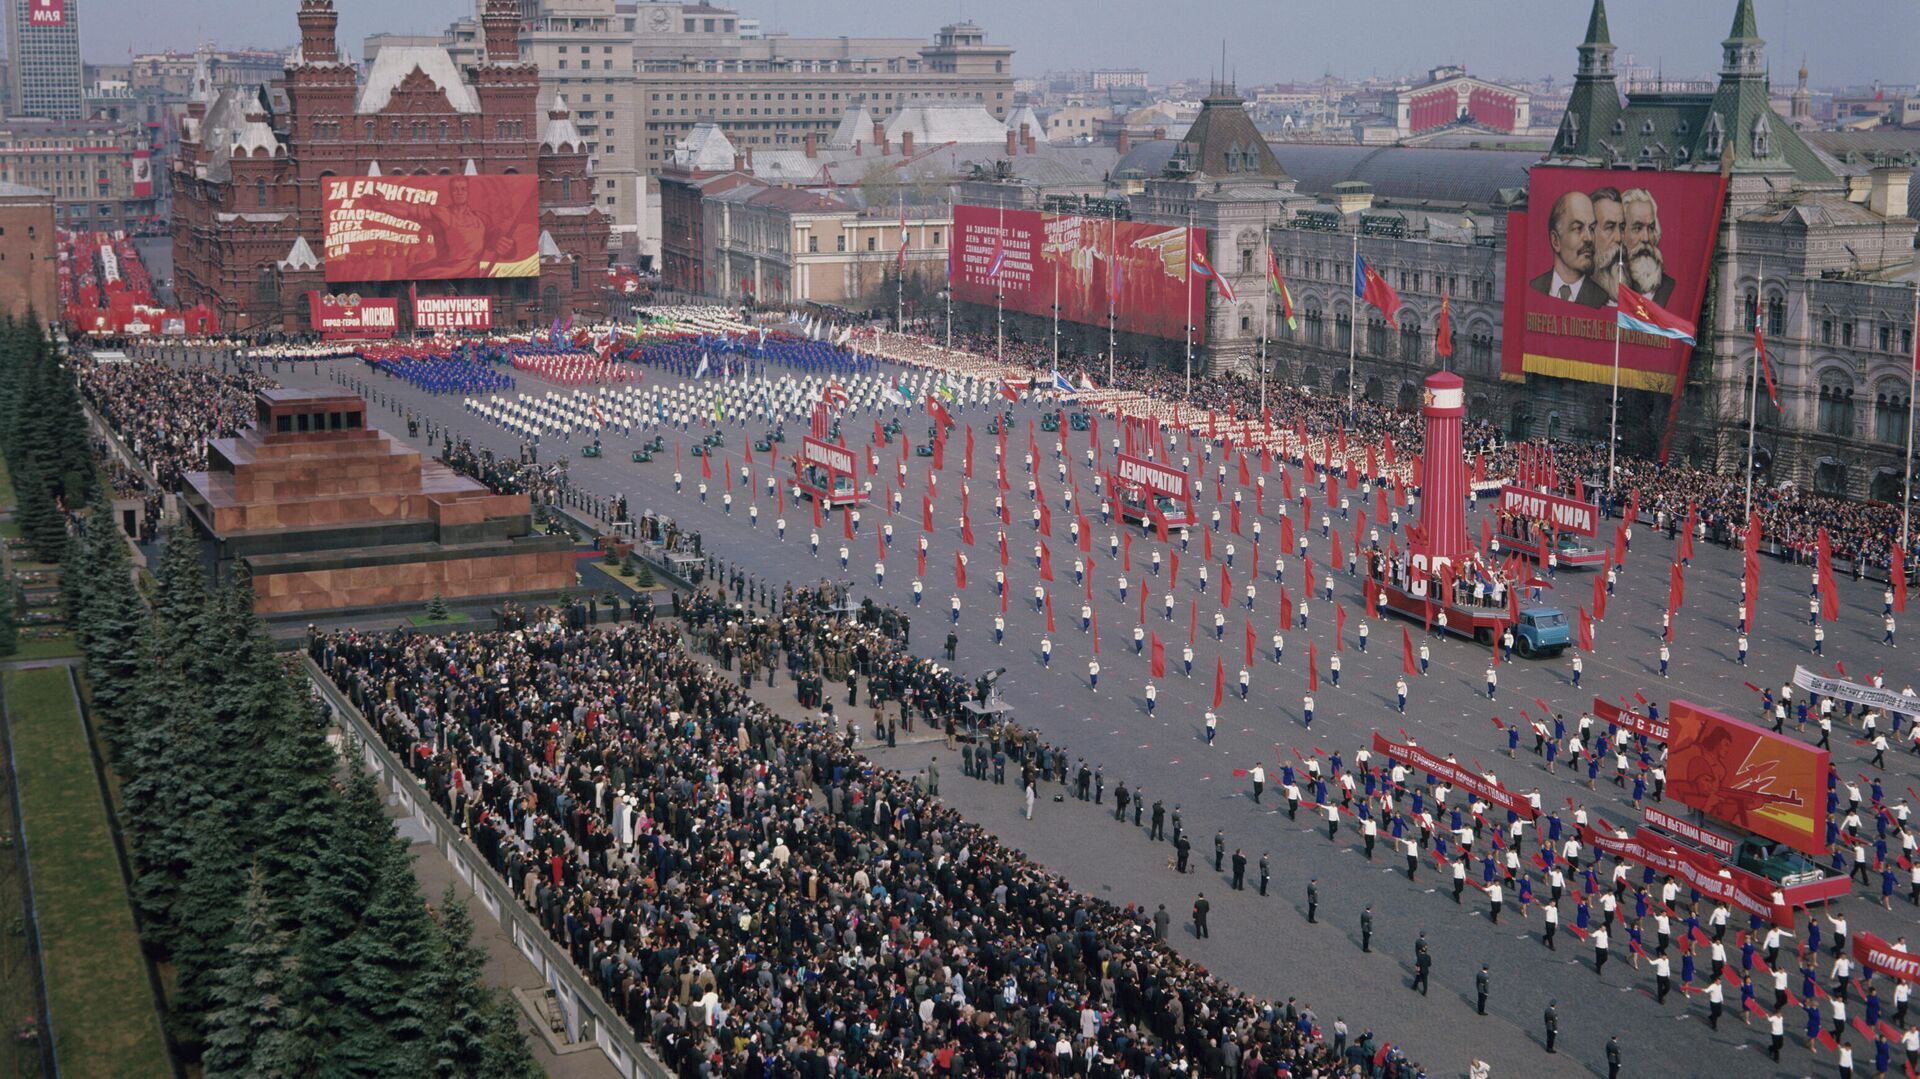 Физкультурный парад на Красной площади в День международной солидарности трудящихся. - Sputnik Таджикистан, 1920, 27.12.2021